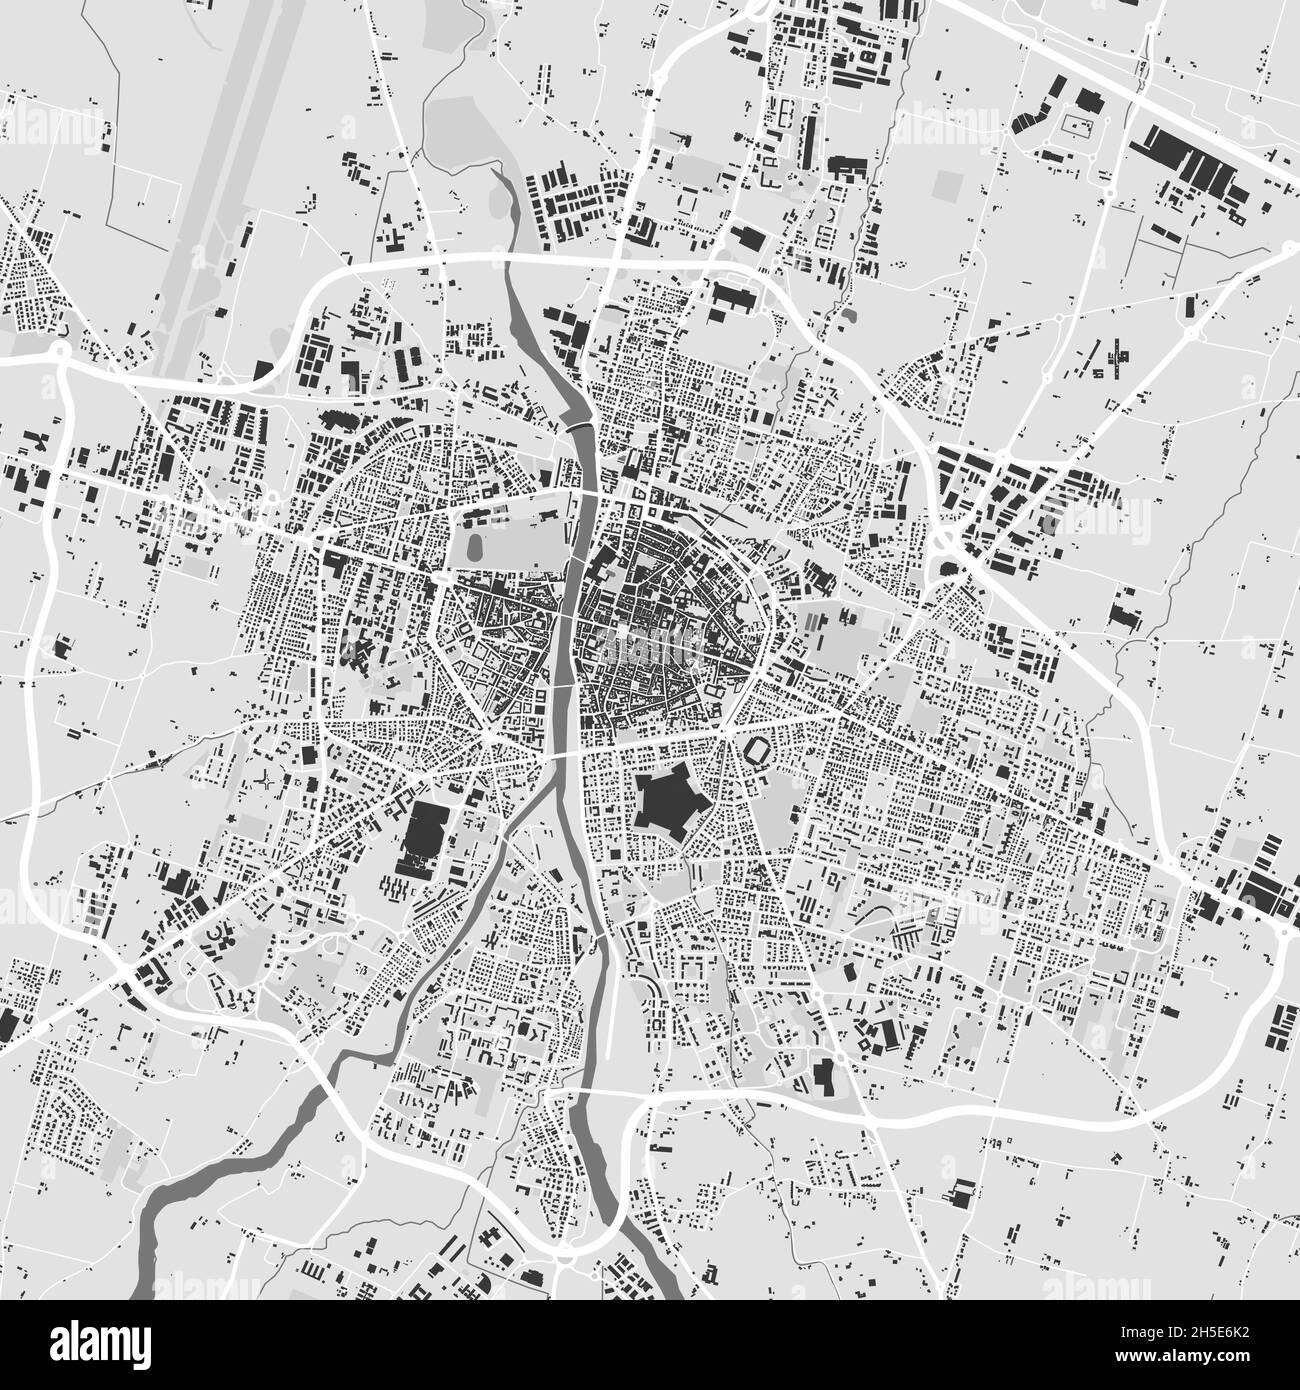 Stadtbild-Vektorkarte von Parma. Vektorgrafik, Parma Karte Graustufen schwarz-weiß Kunstposter. Straßenbild mit Straßen, Metropolstadt ar Stock Vektor